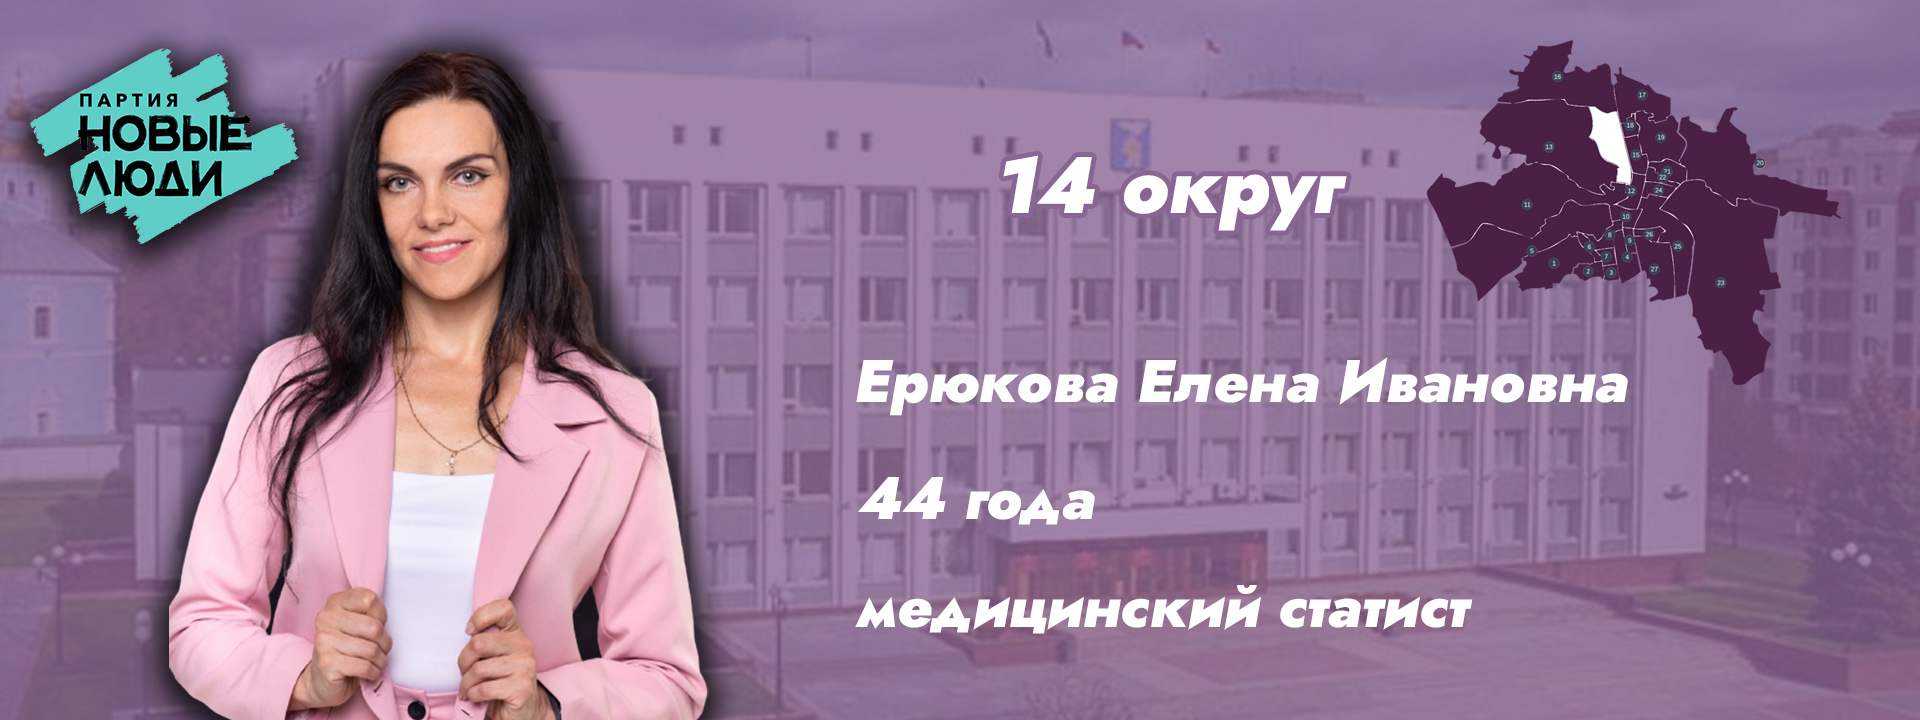 https://vk.com/erukova_elena